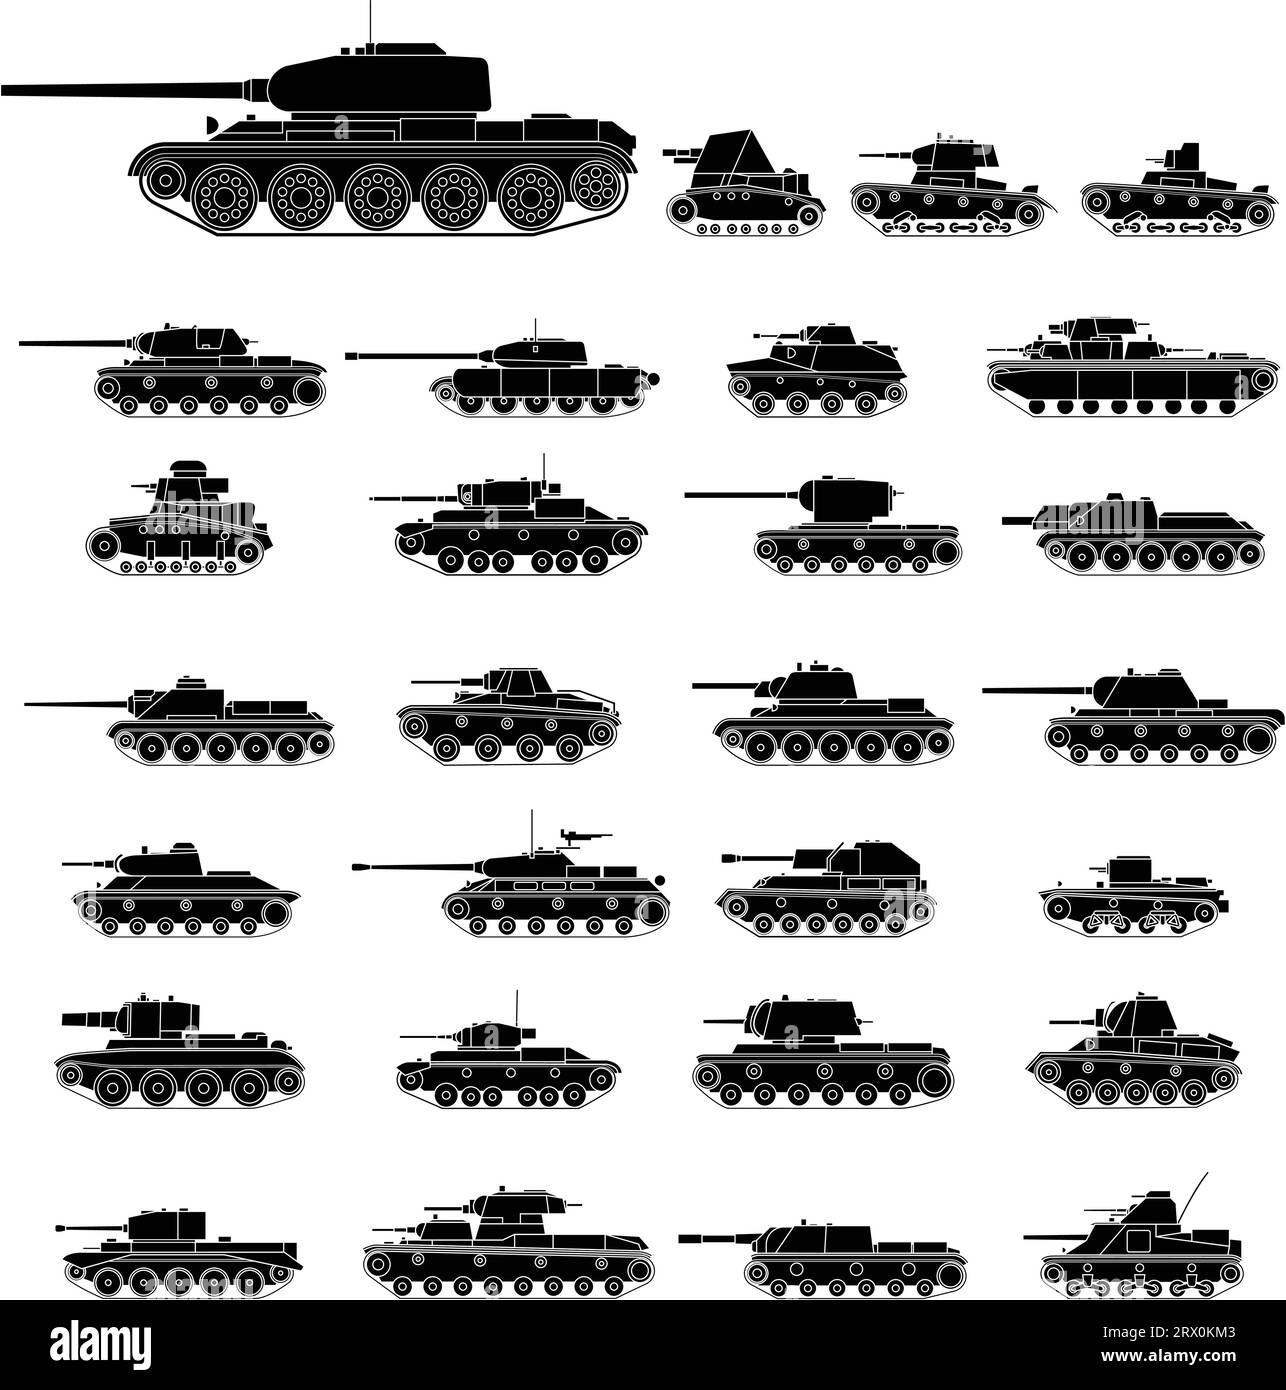 Illustration vectorielle en couches des chars russes qui sont principalement utilisés dans la Seconde Guerre mondiale Illustration de Vecteur